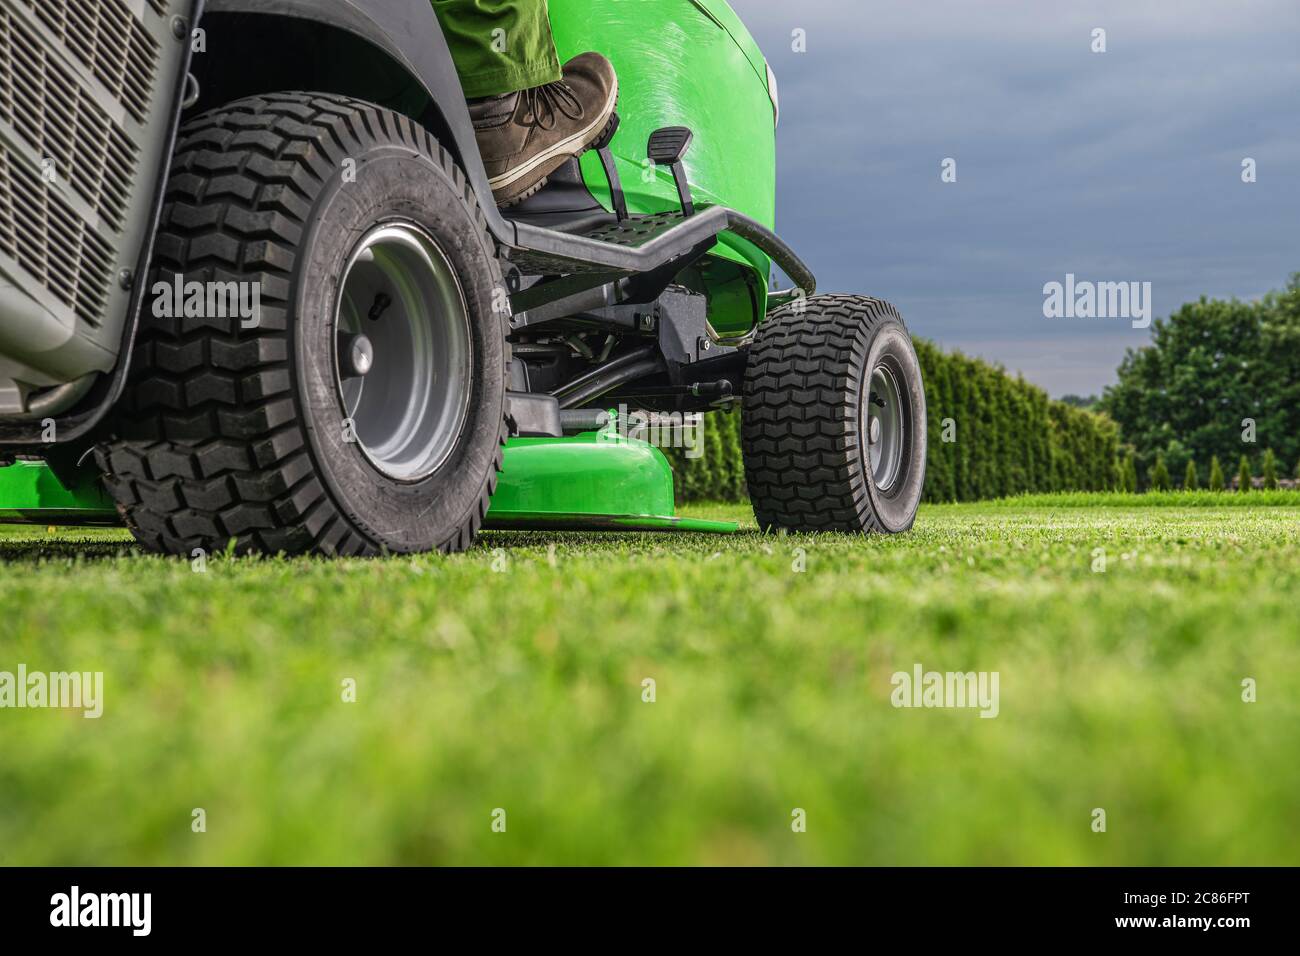 Garten- und Landschaftsbau Thema. Outdoor-Power-Ausrüstung Reiten Rasen Mäher Traktor Job. Rasenmäharbeiten. Stockfoto